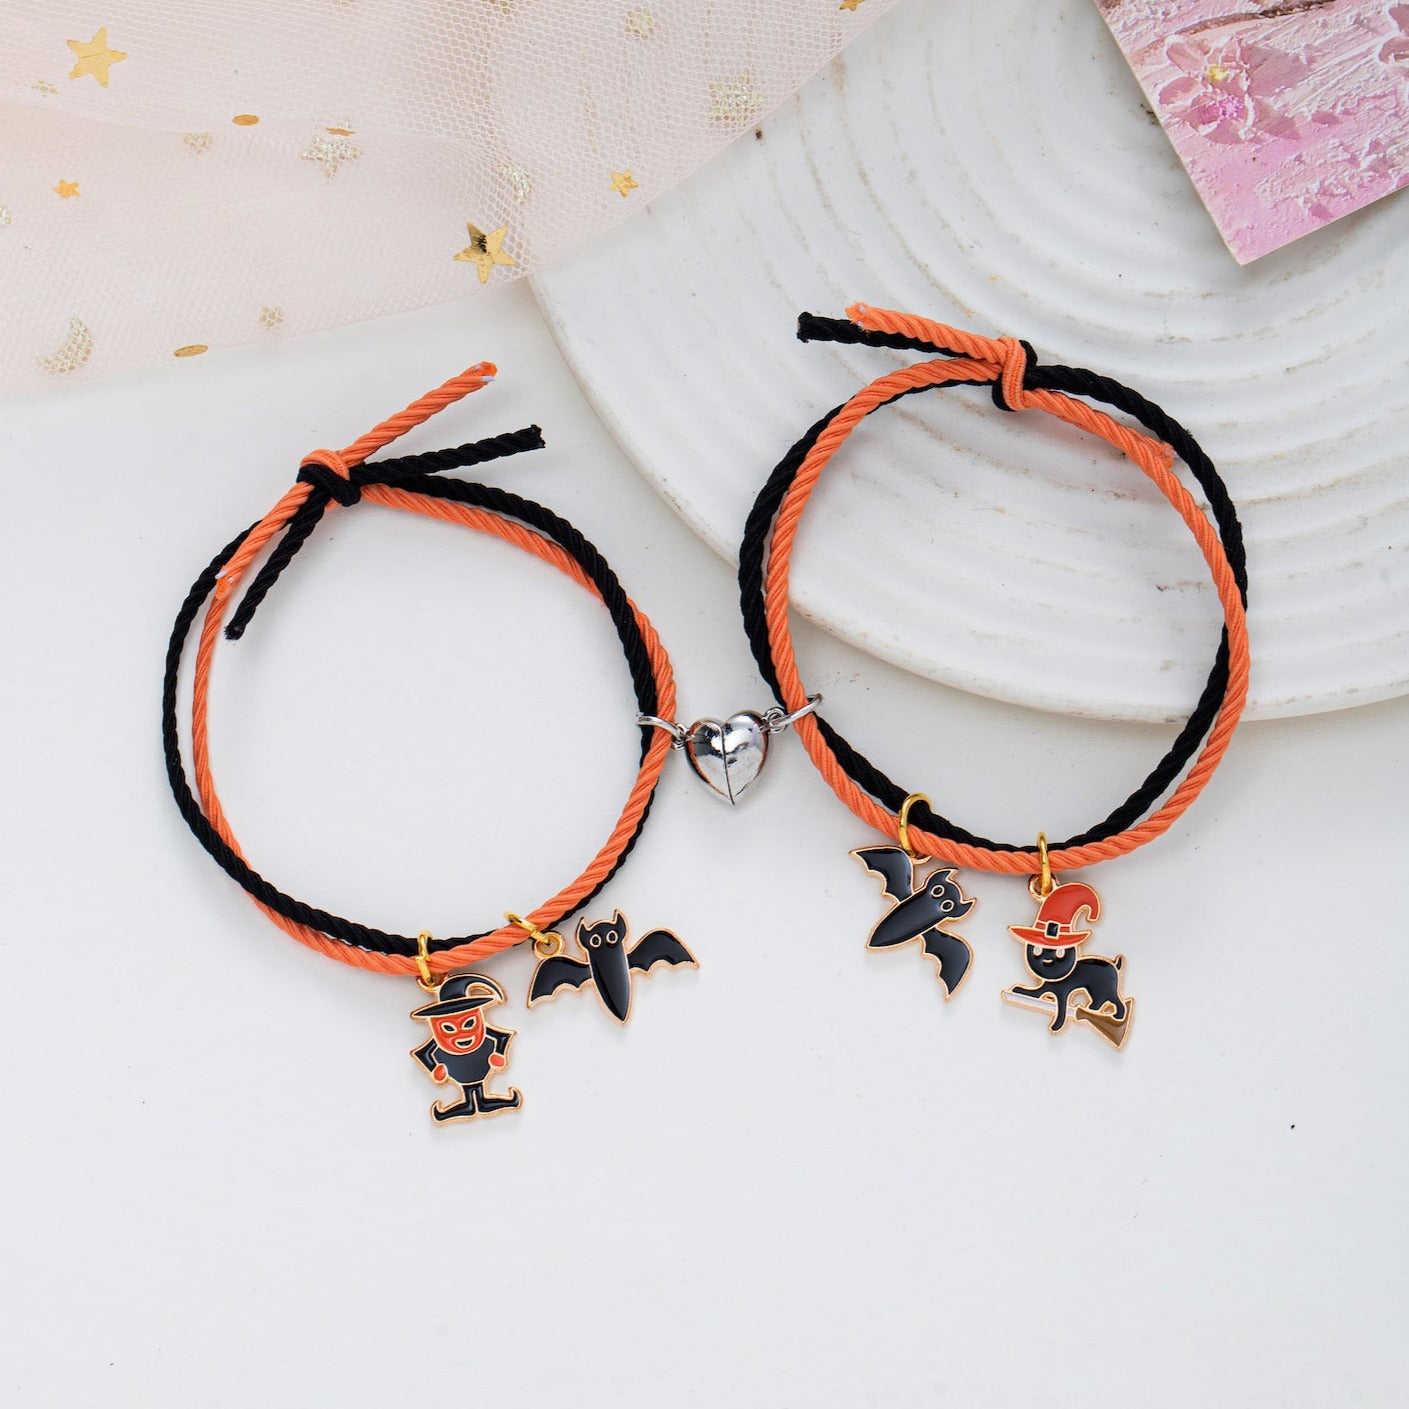 Boo! Pumpkin Halloween Matching Bracelets